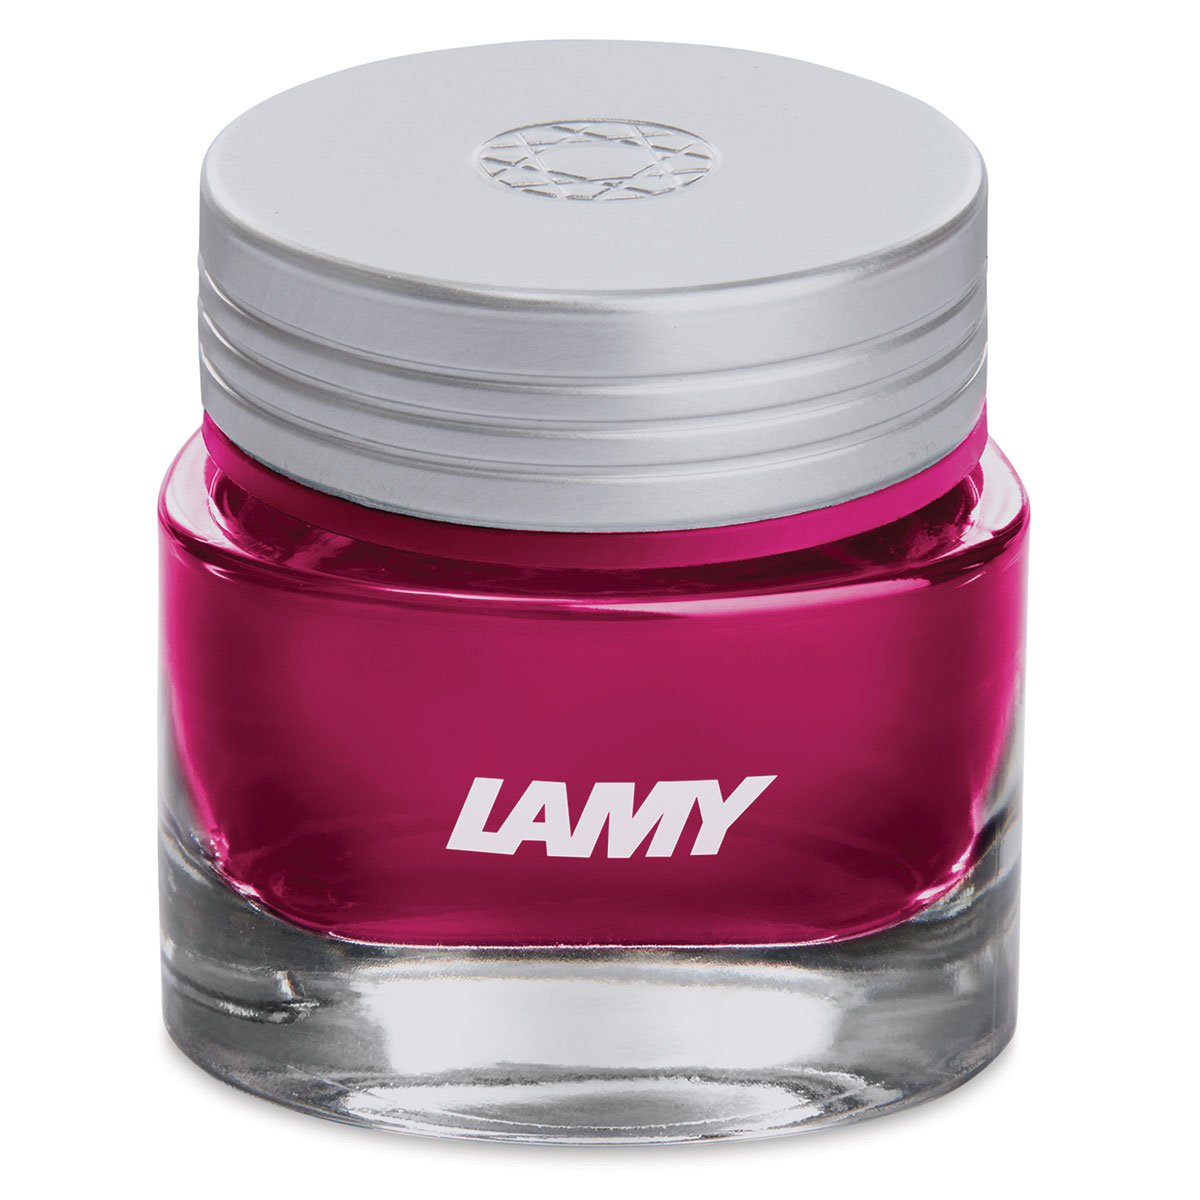 Lamy Crystal Ink | BLICK Art Materials